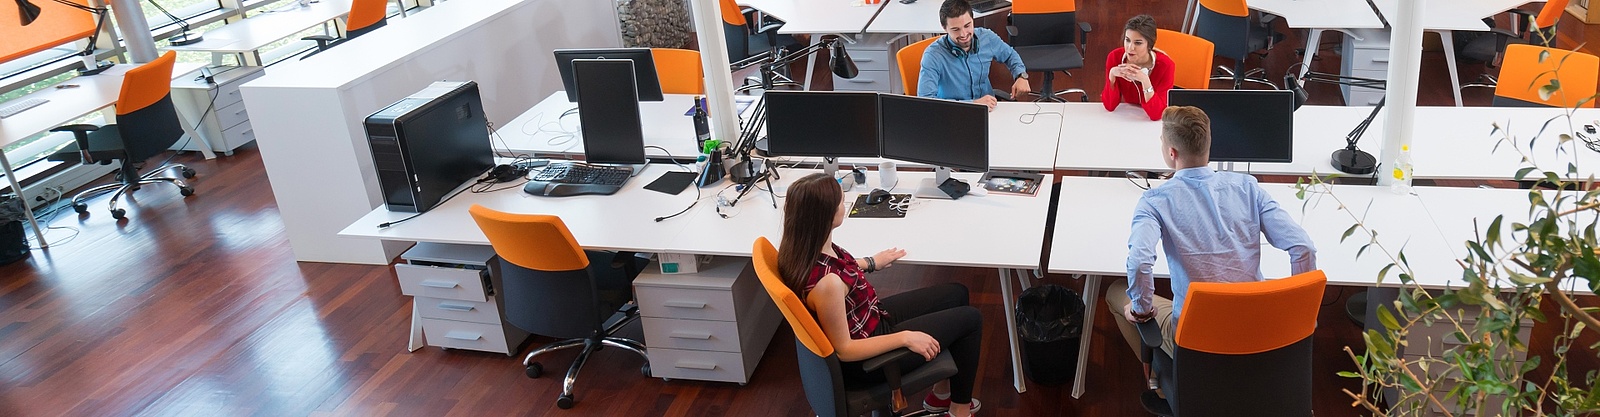 Ett öppet kontorslandskap där fyra affärsklädda människor, två män och två kvinnor sitter och diskuterar. 